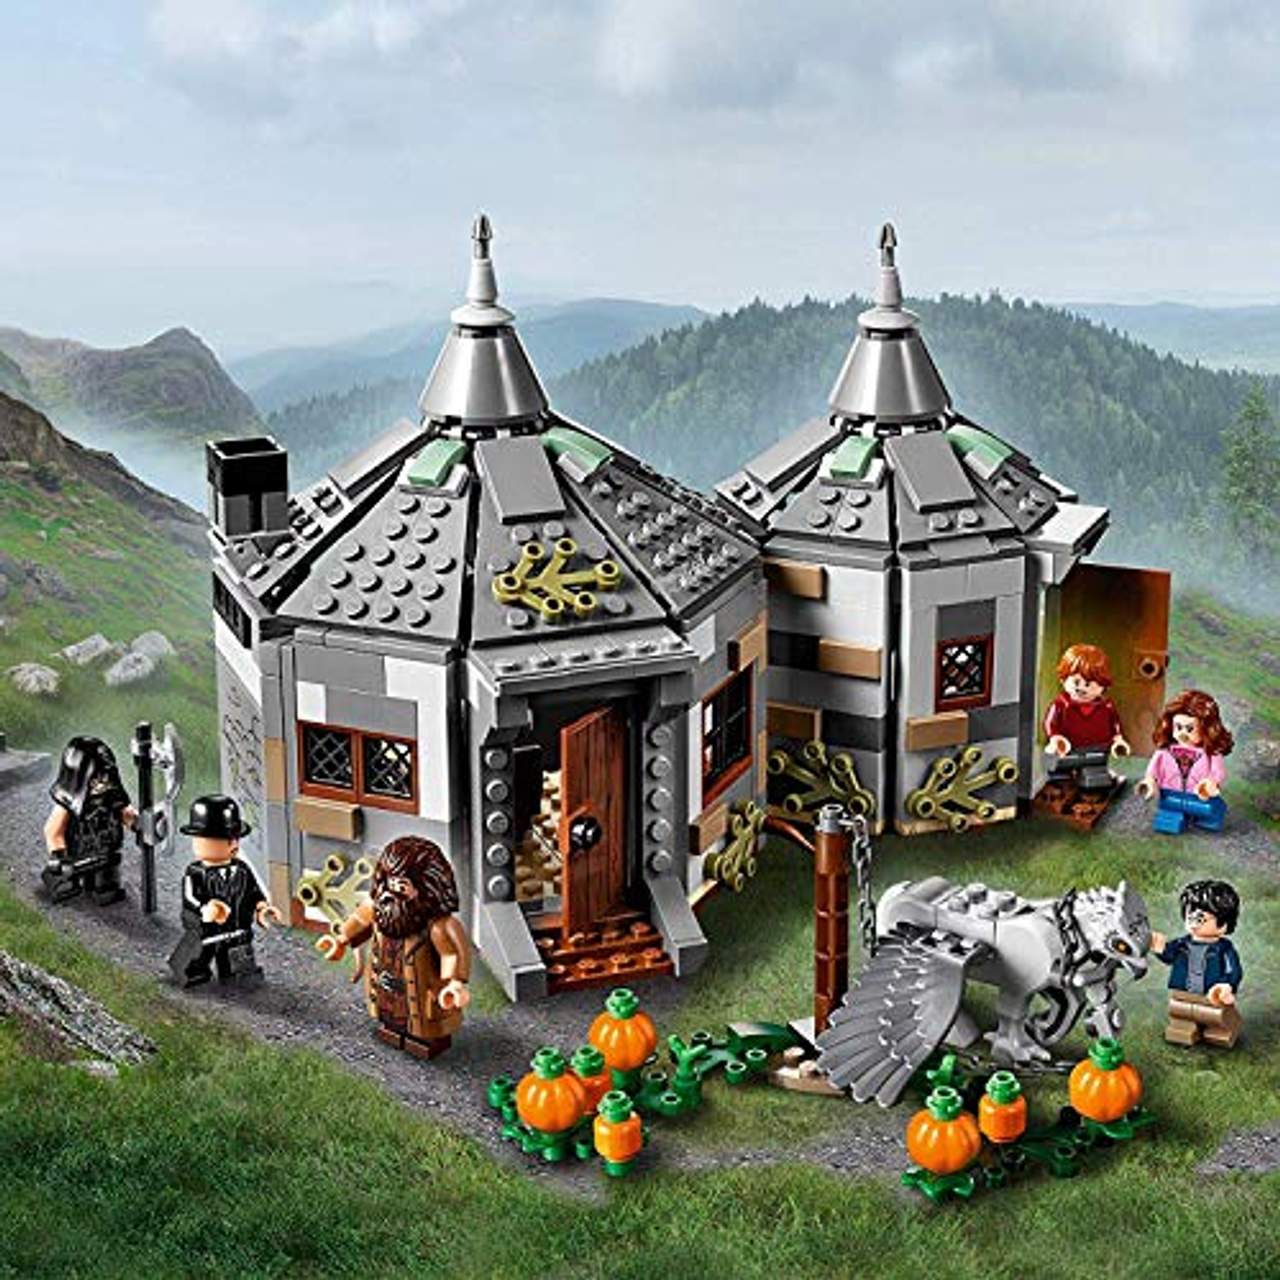 LEGO Harry Potter und der Gefangene von Askaban 75947